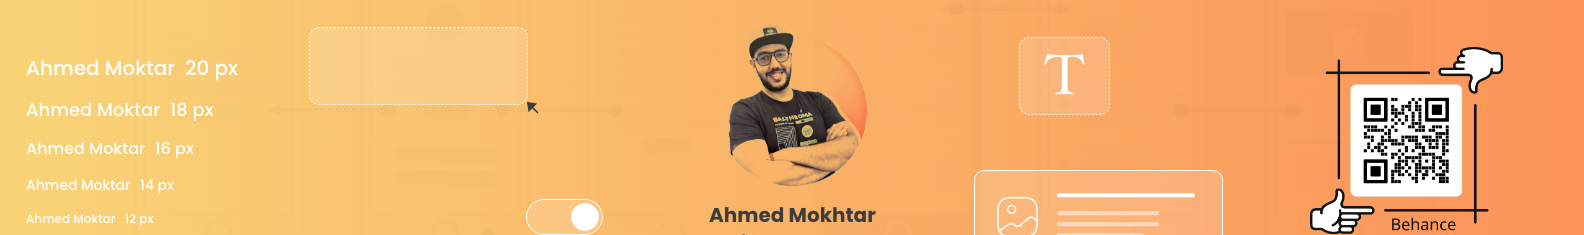 Banner de perfil de Ahmed Mokhtar